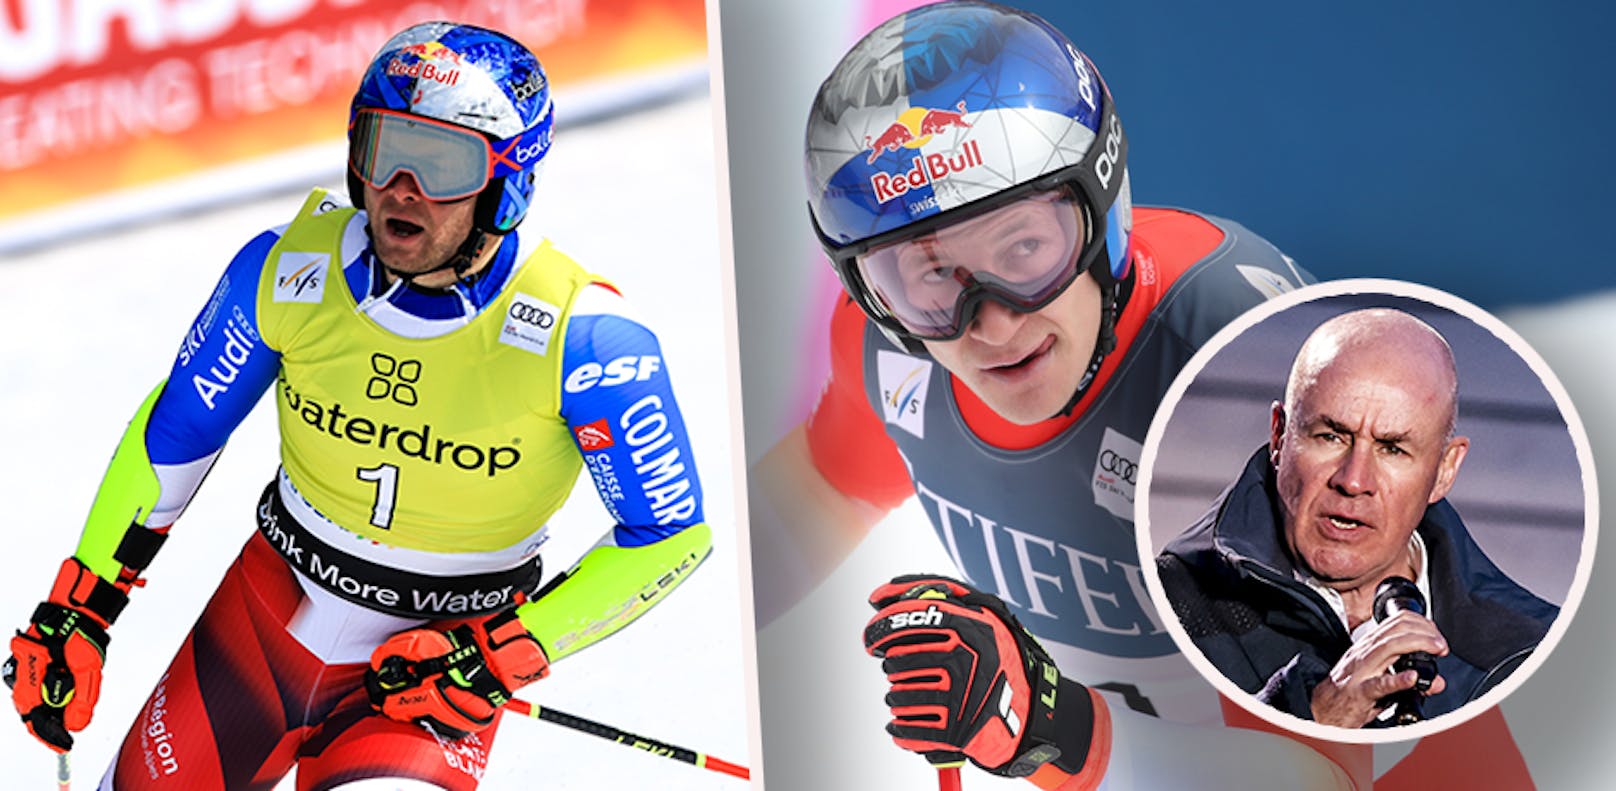 FIS-Präsident Johan Eliasch droht nun allen Ski-Stars, die einen Helm haben, der zu sehr an den Sponsor erinnert. 